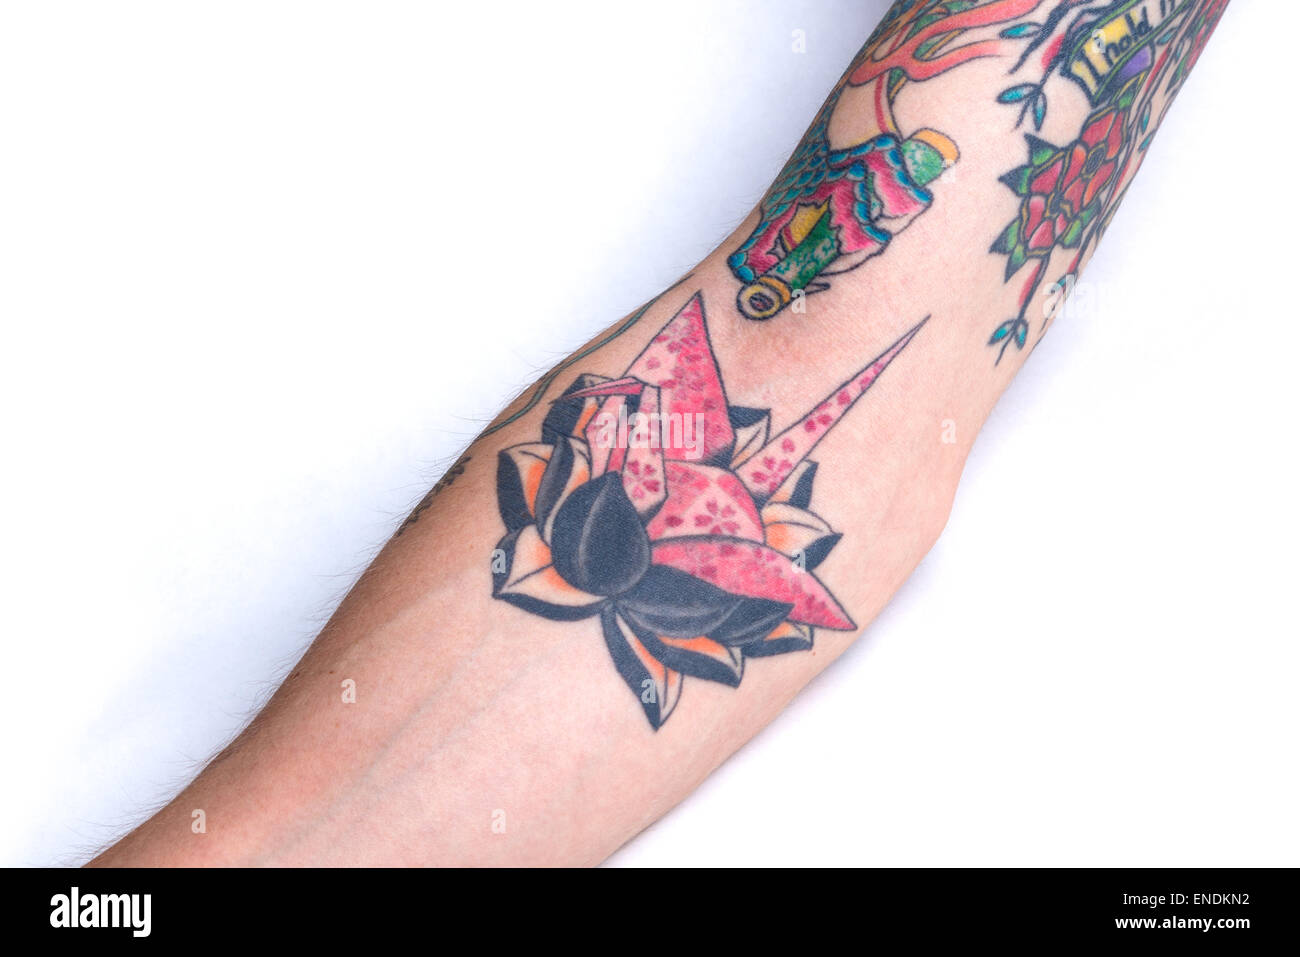 Un tatouage d'une rose en origami crane avec un motif fleurs de cerisier sur un lotus noir entouré par les bits d'autres tatouages sur un forear Banque D'Images